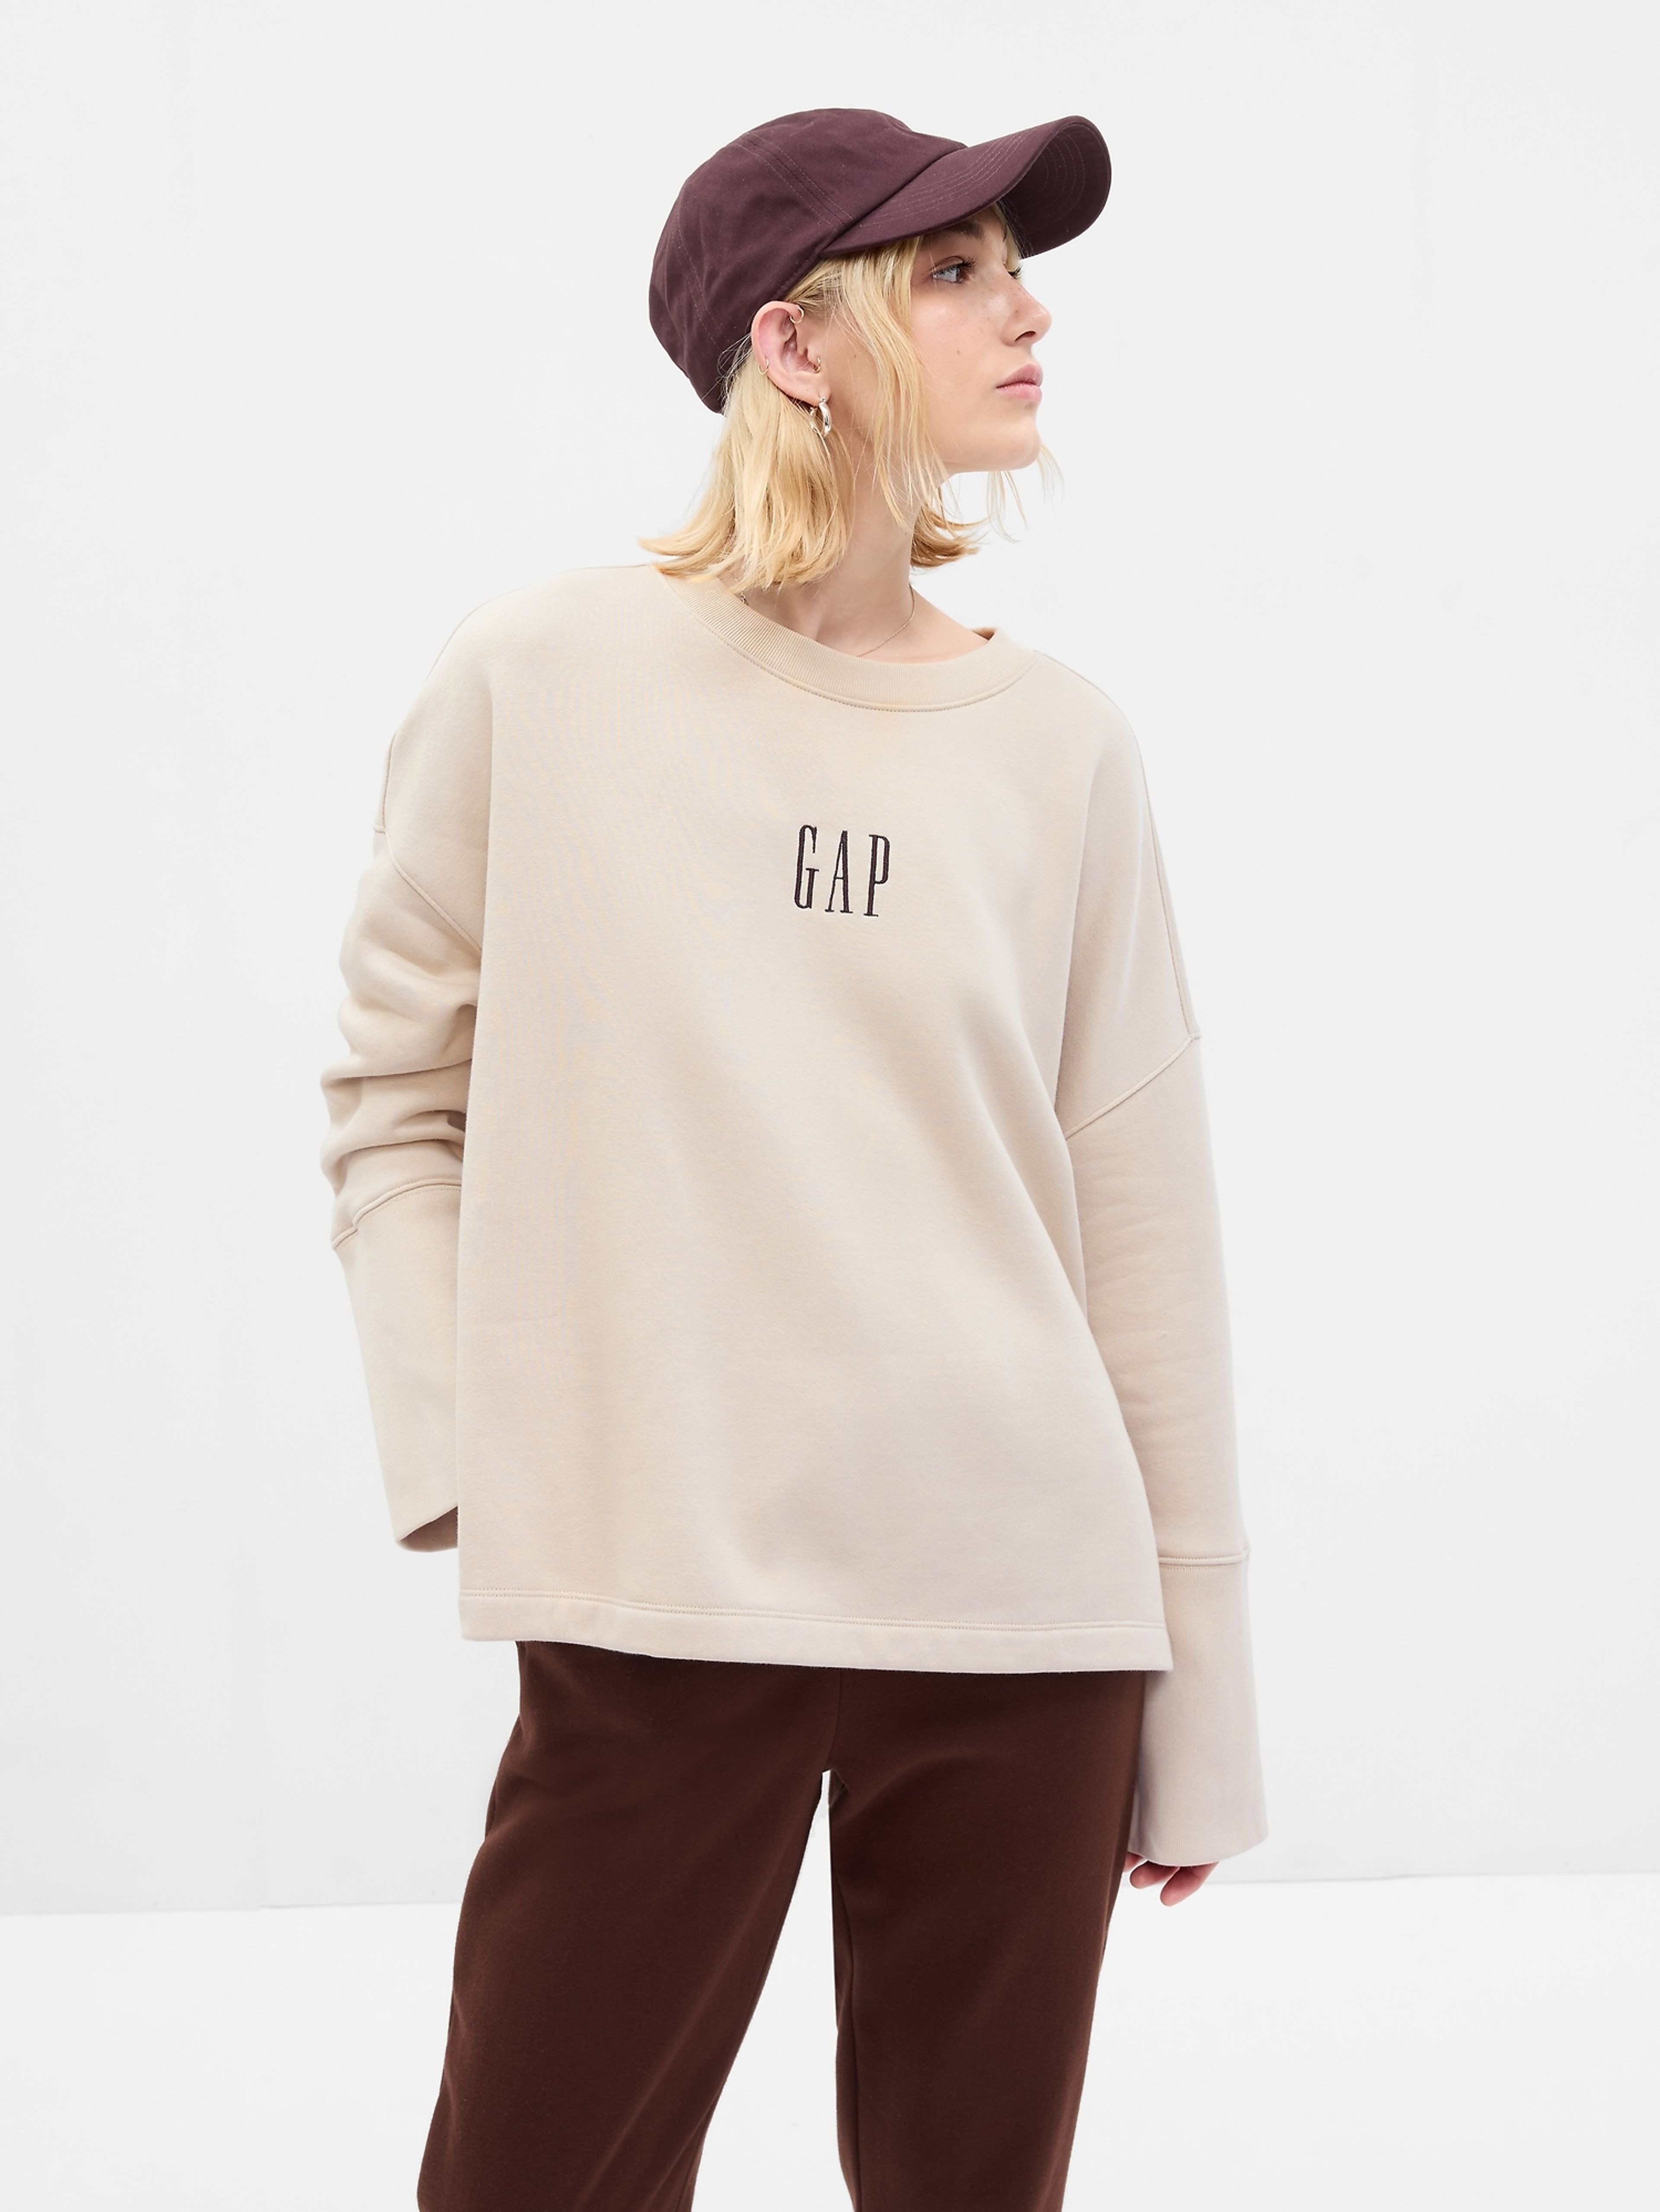 Sweatshirt vintage soft mit Logo GAP